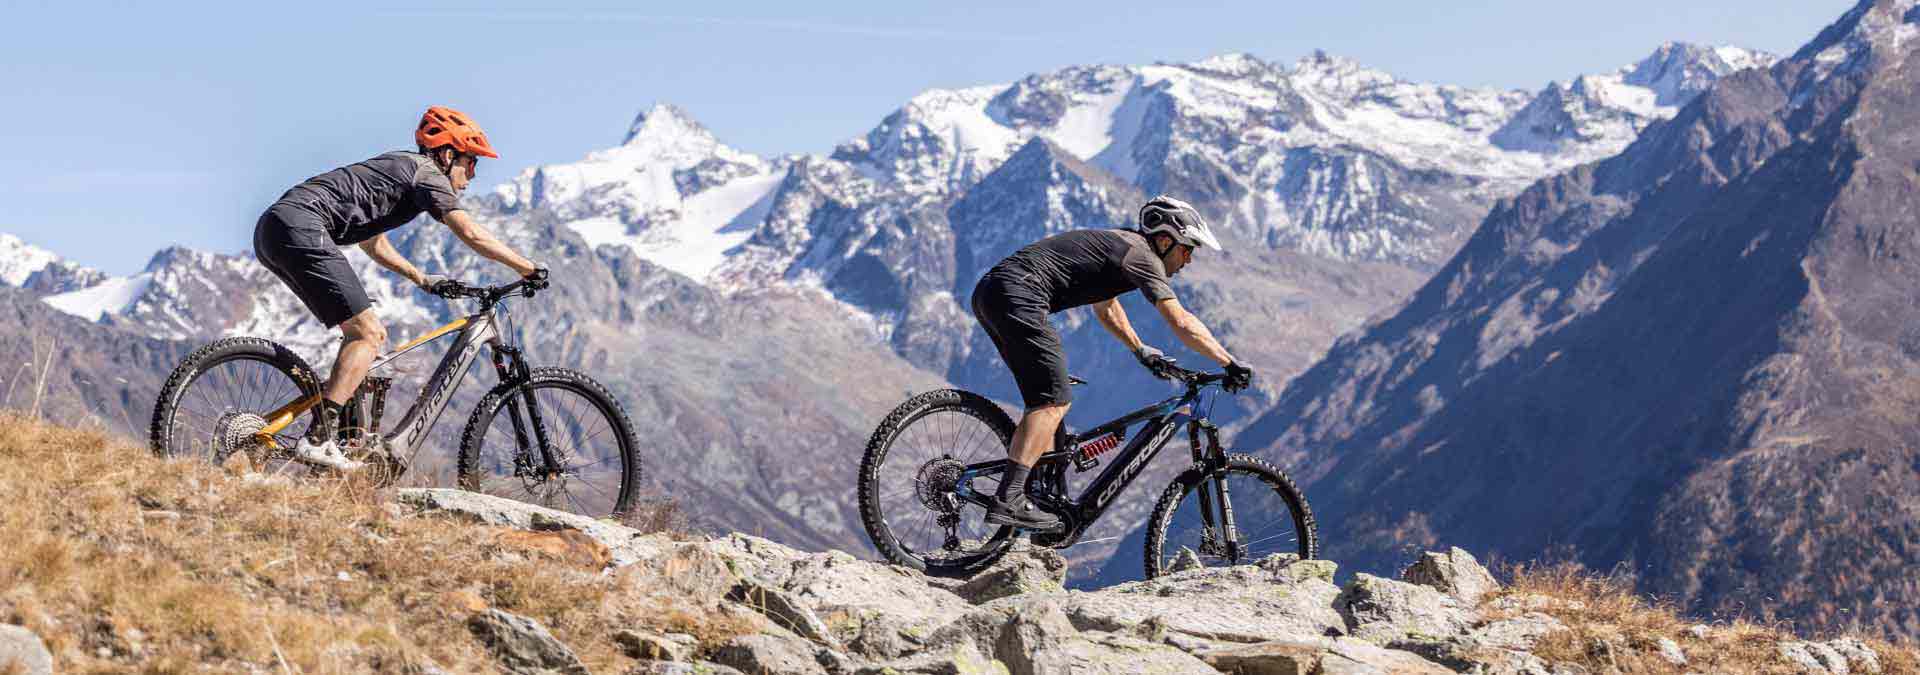 frau-und-mann-auf-e-mountainbikes-fahren-einen-berg-runter